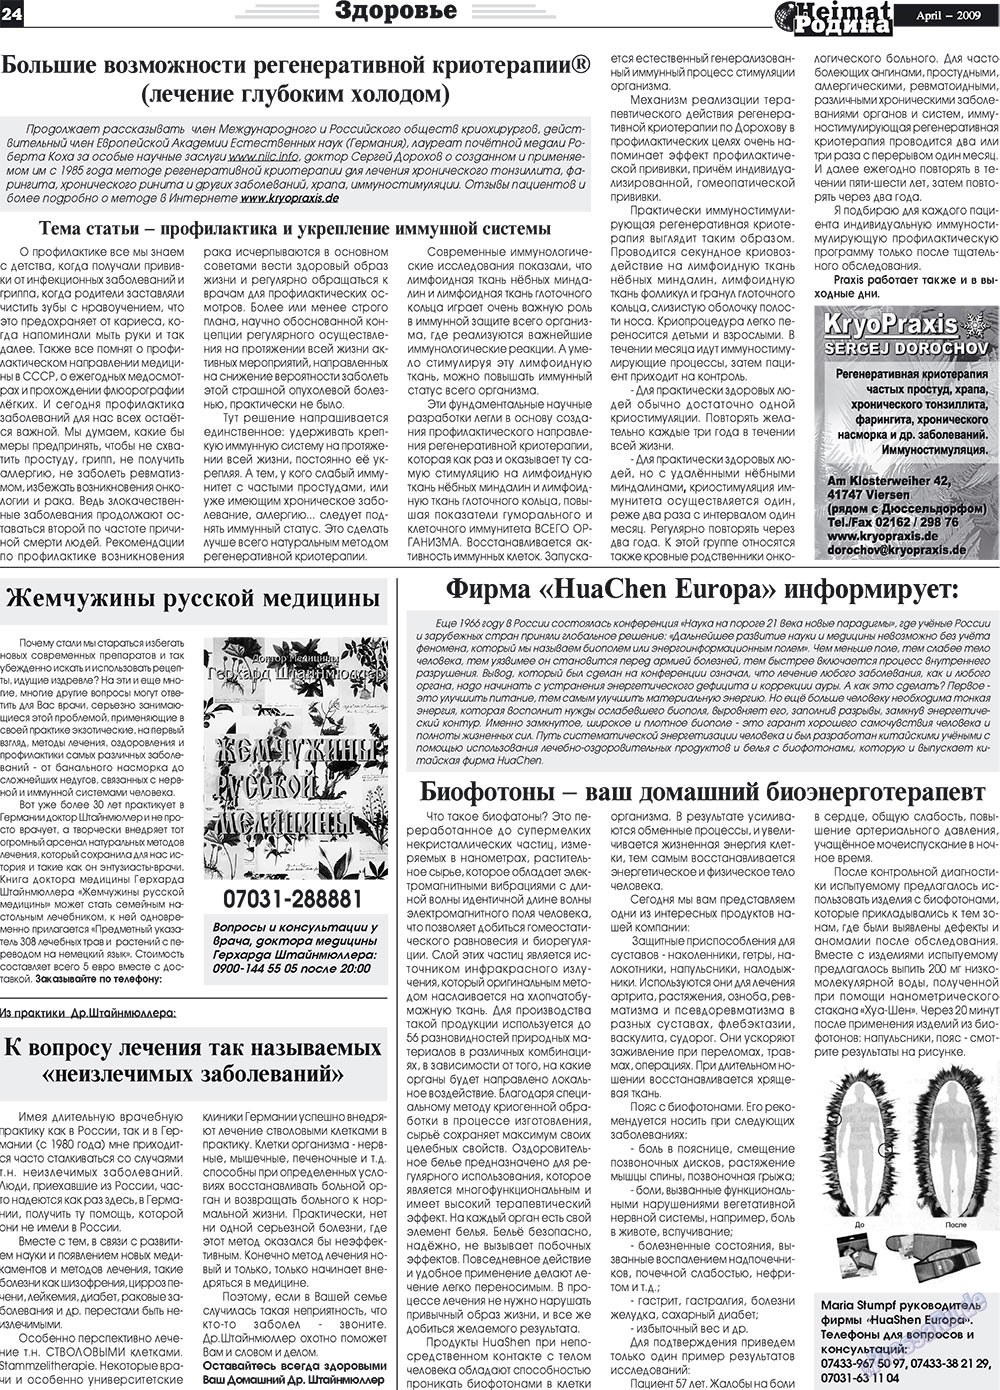 Heimat-Родина (газета). 2009 год, номер 4, стр. 24